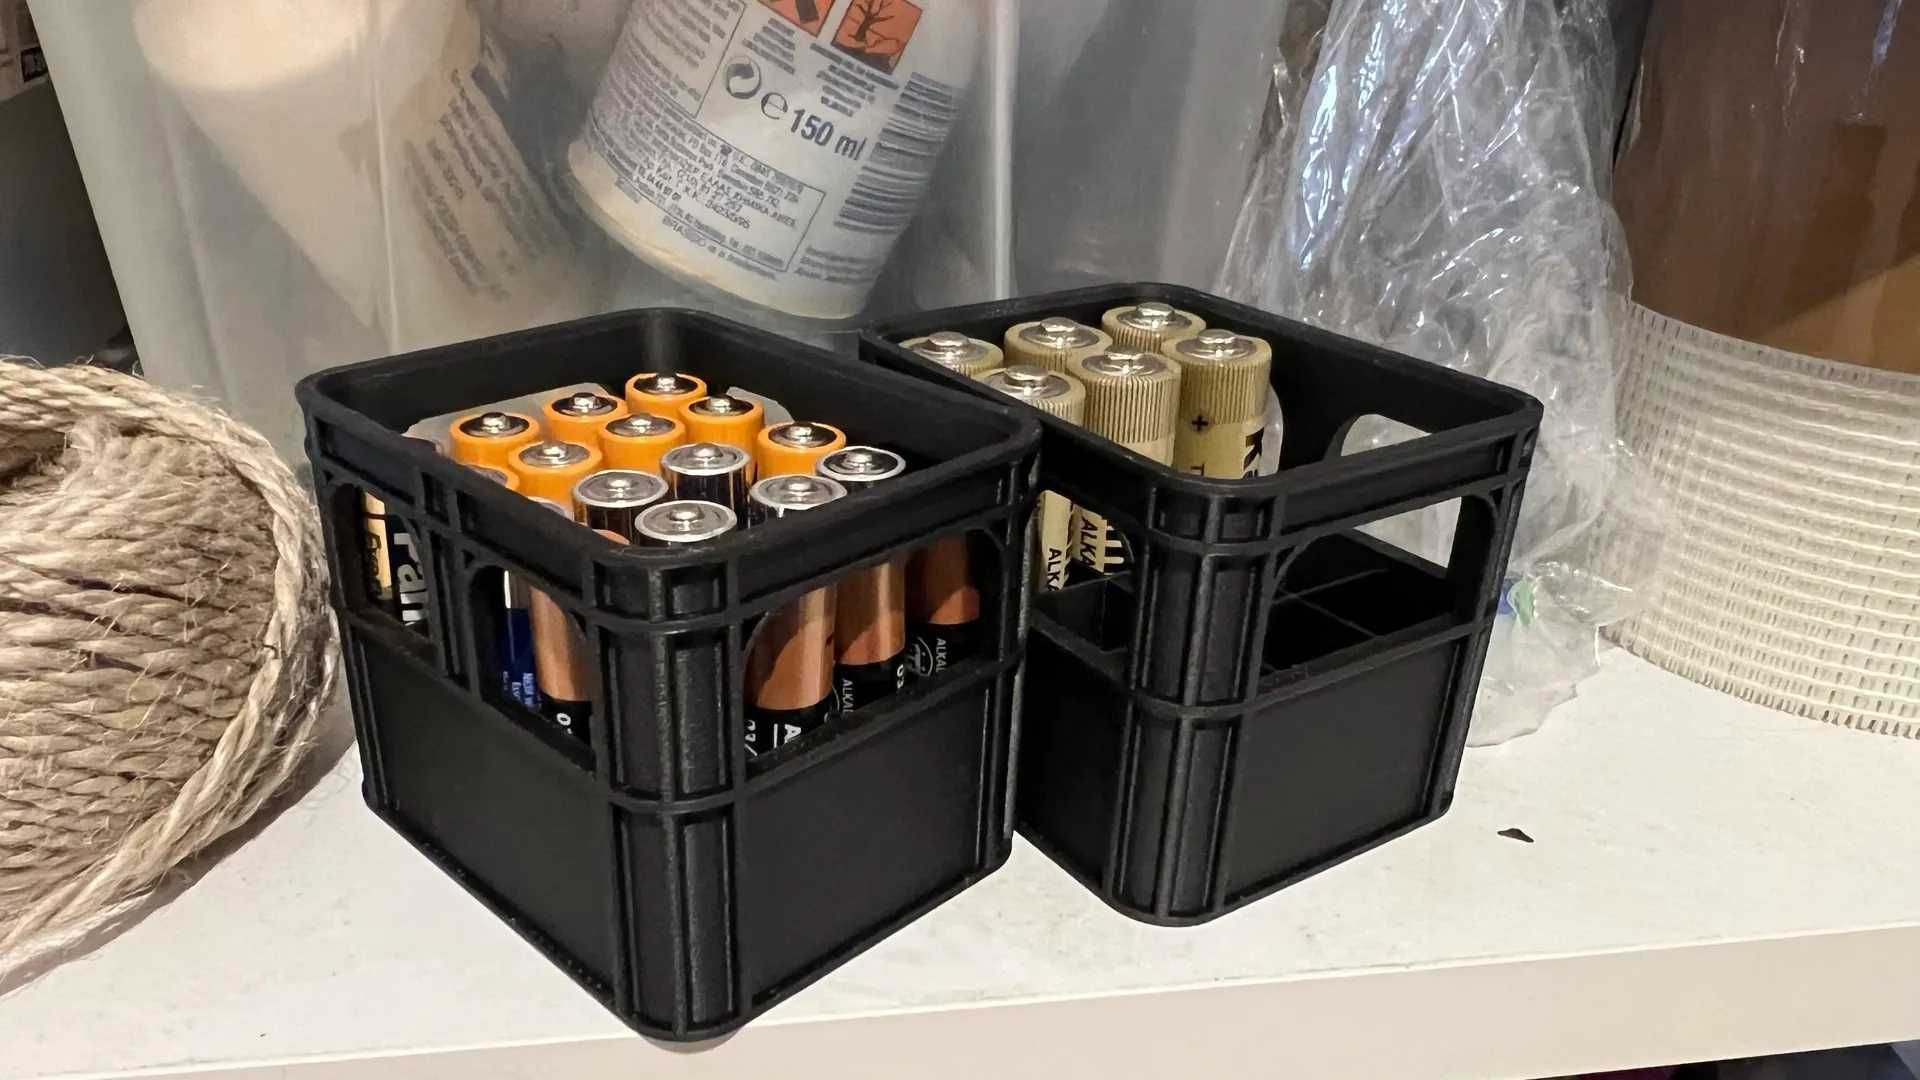 Suport pentru 20 baterii AAA in forma de ladita de bere, negru